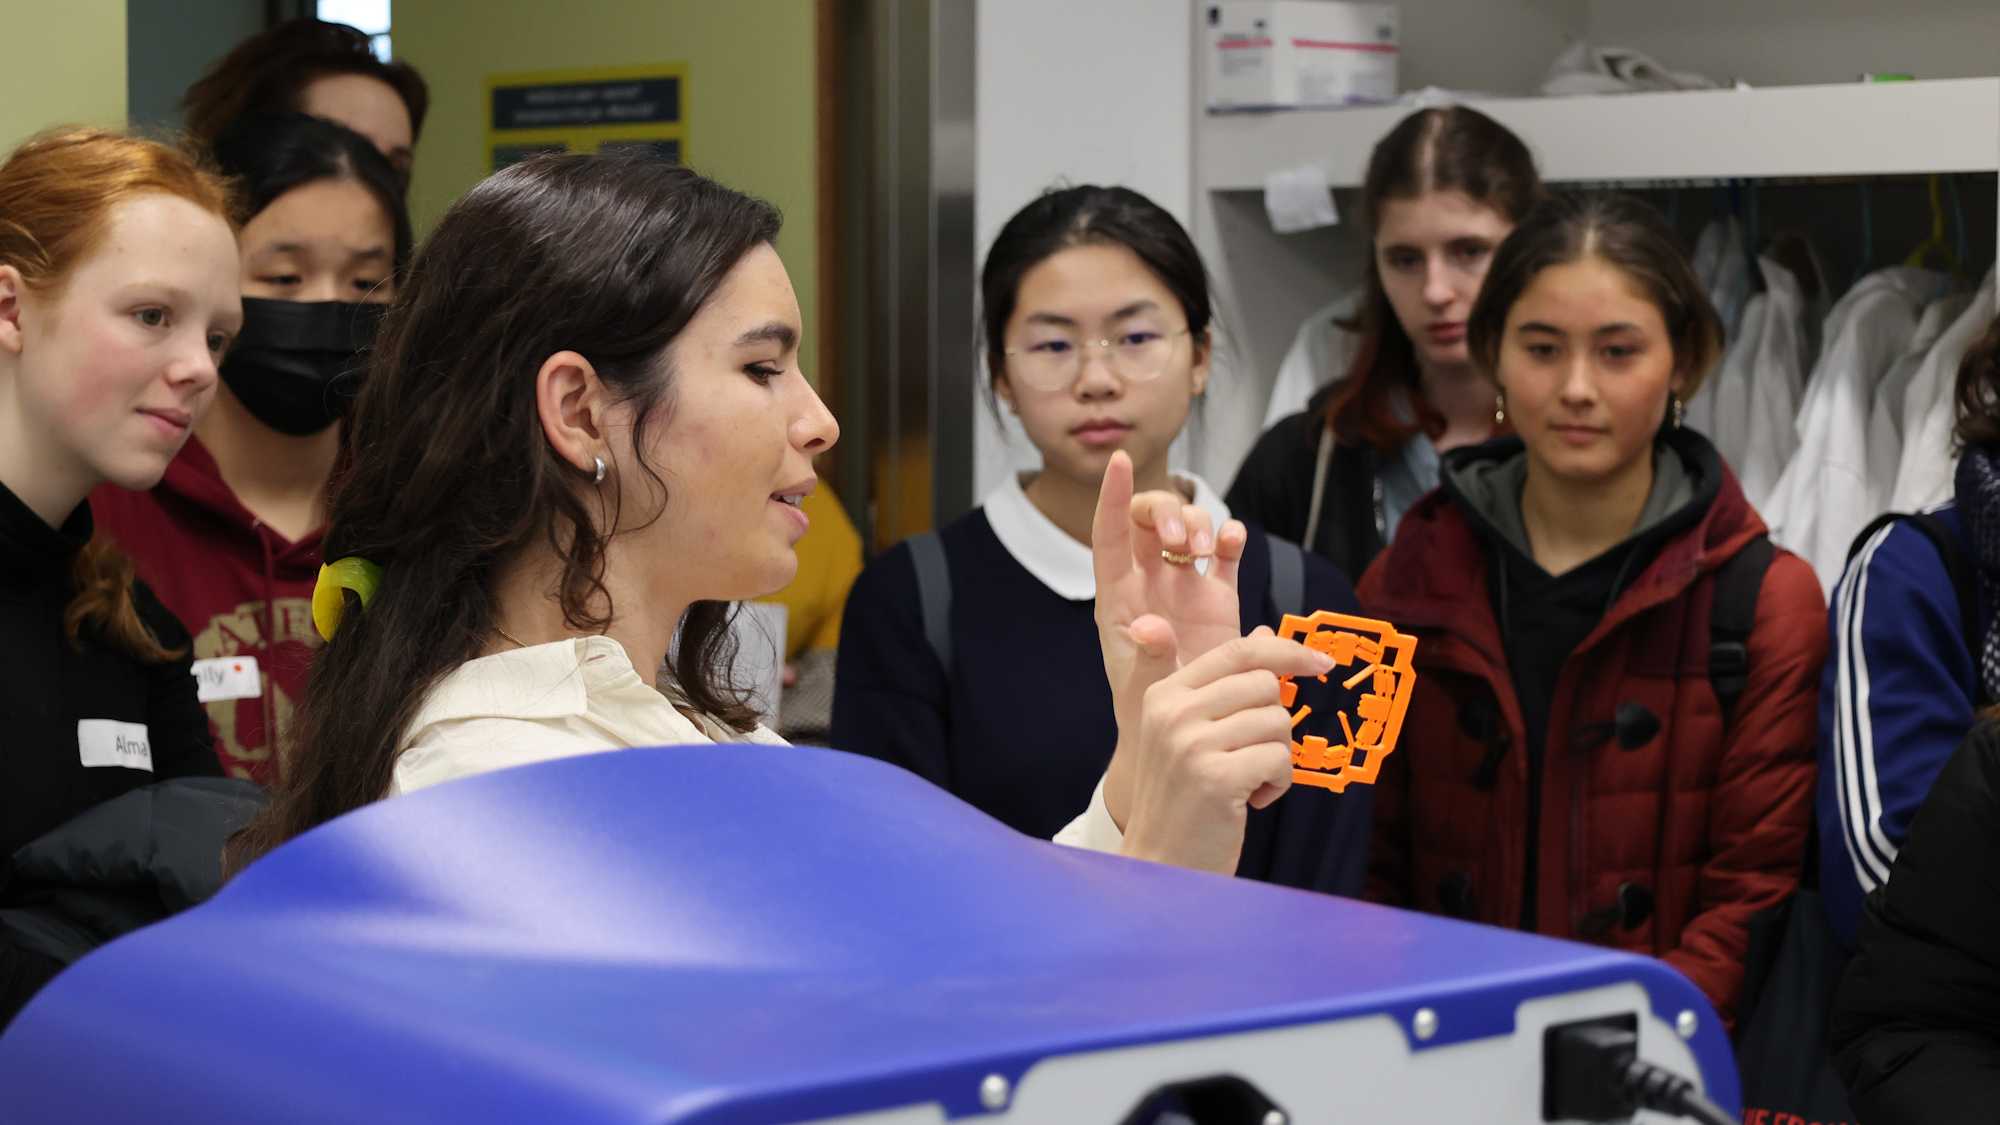 Schülerinnen blicken interessiert auf ein Objekt, dass eine Forscherin zeigt